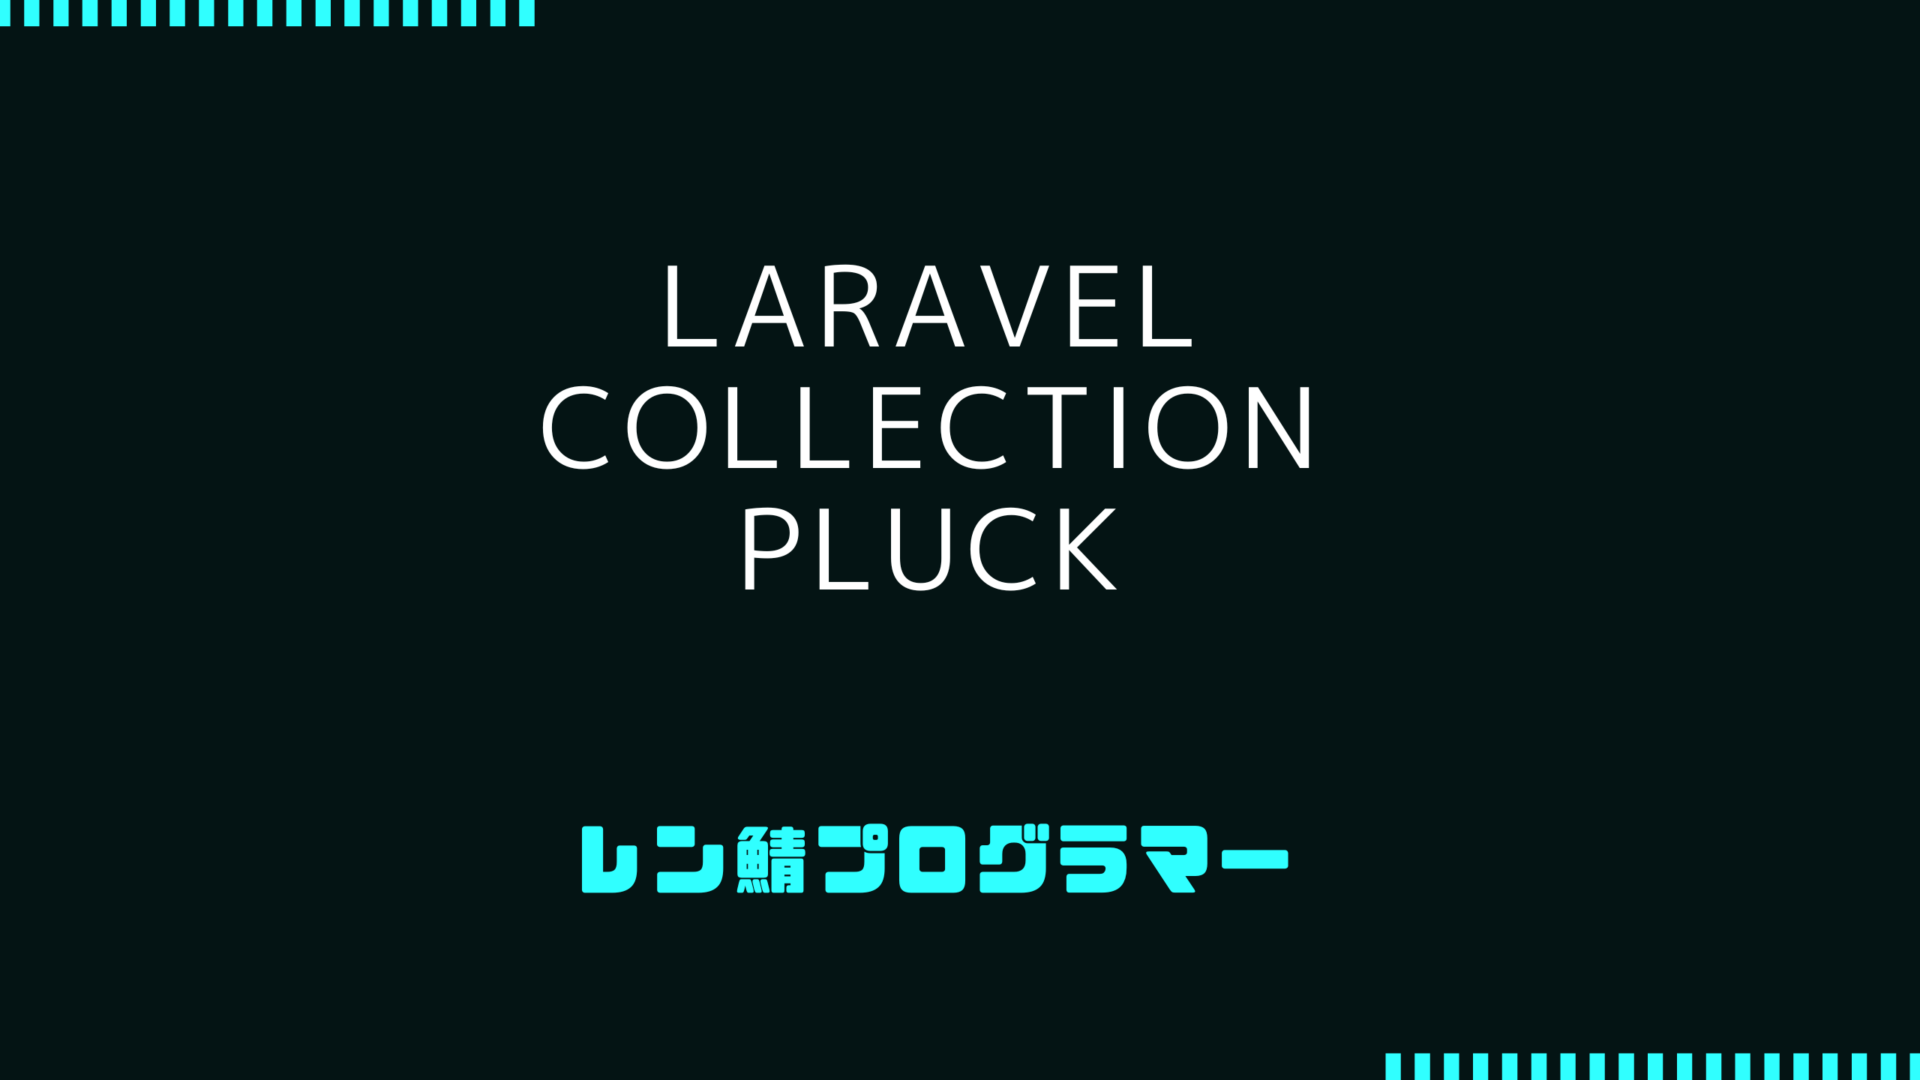 Laravel Collectionのpluckメソッドを使って必要な情報を取り出す方法